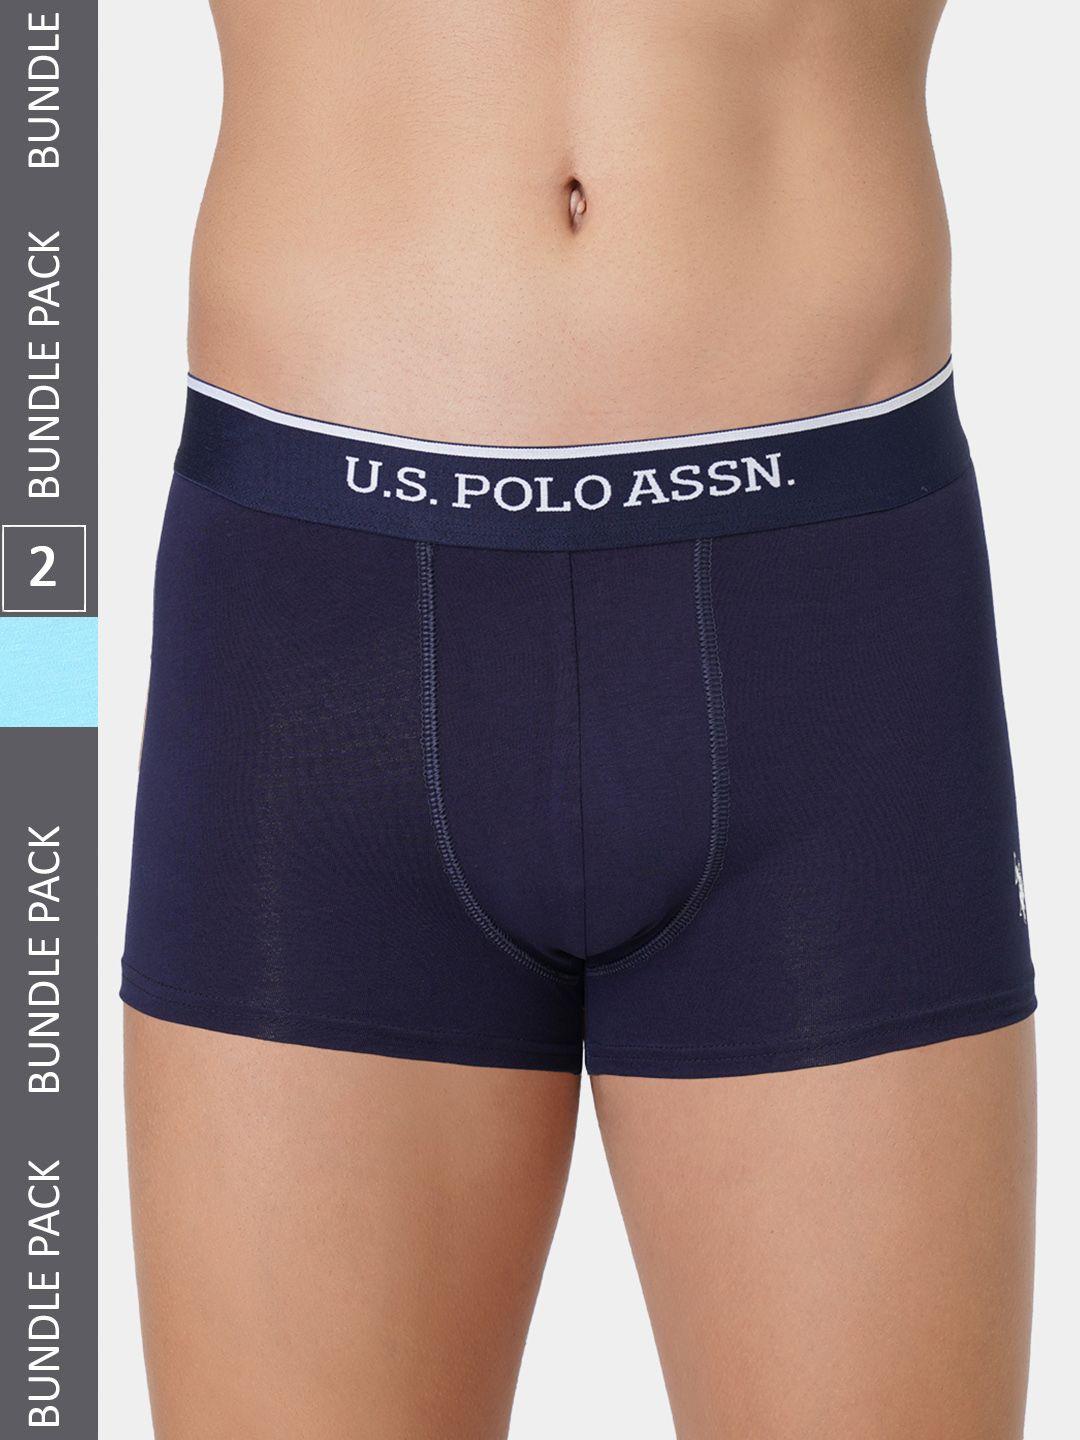 u.s. polo assn. men pack of 2 brand logo printed detail trunks et004-nb1-p2